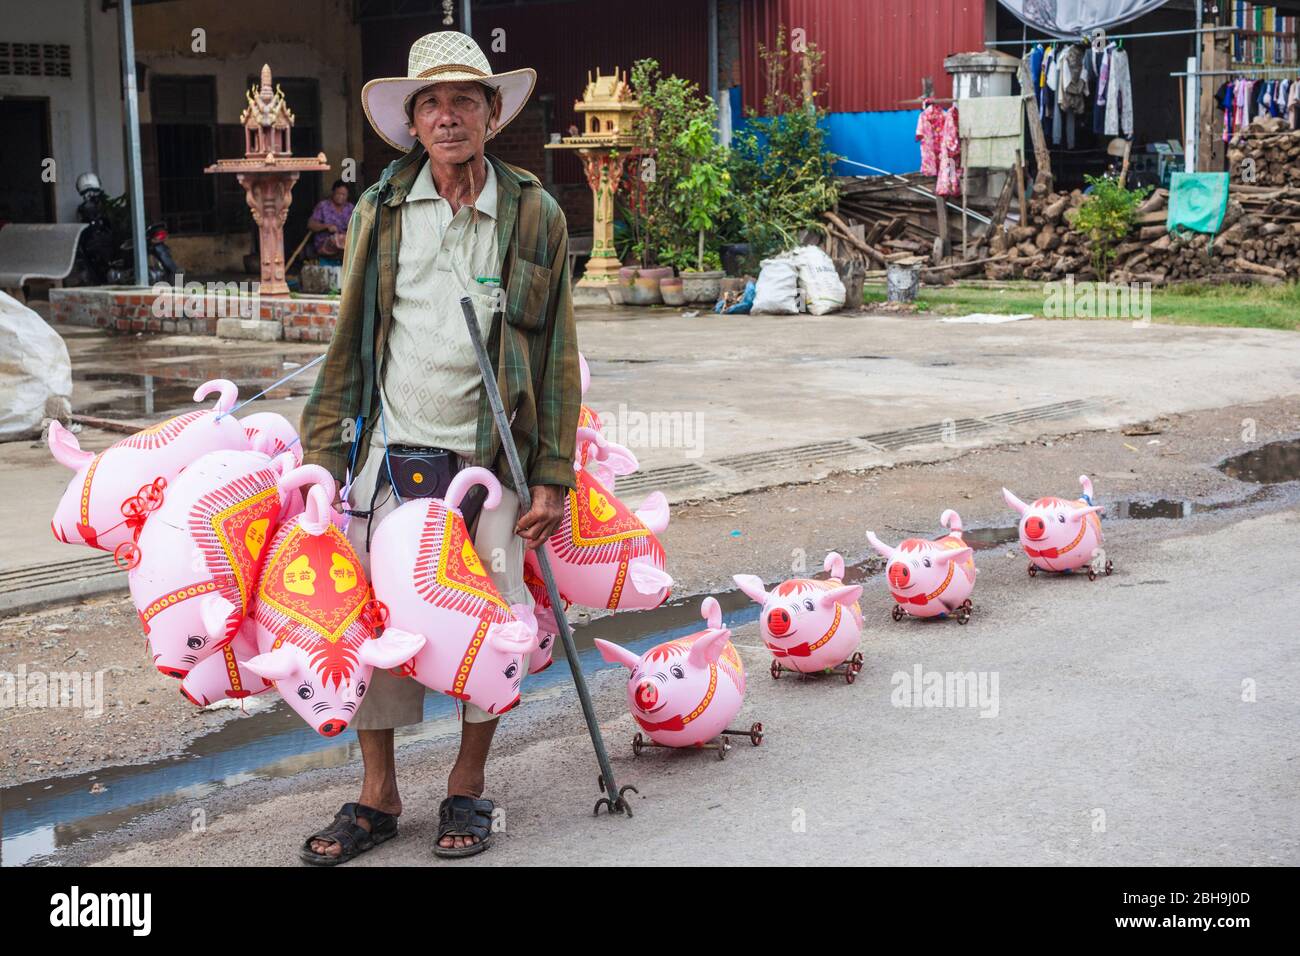 Camboya, Battambang, vendedor con juguetes de tiro en forma de cerdo, sin emisiones Foto de stock